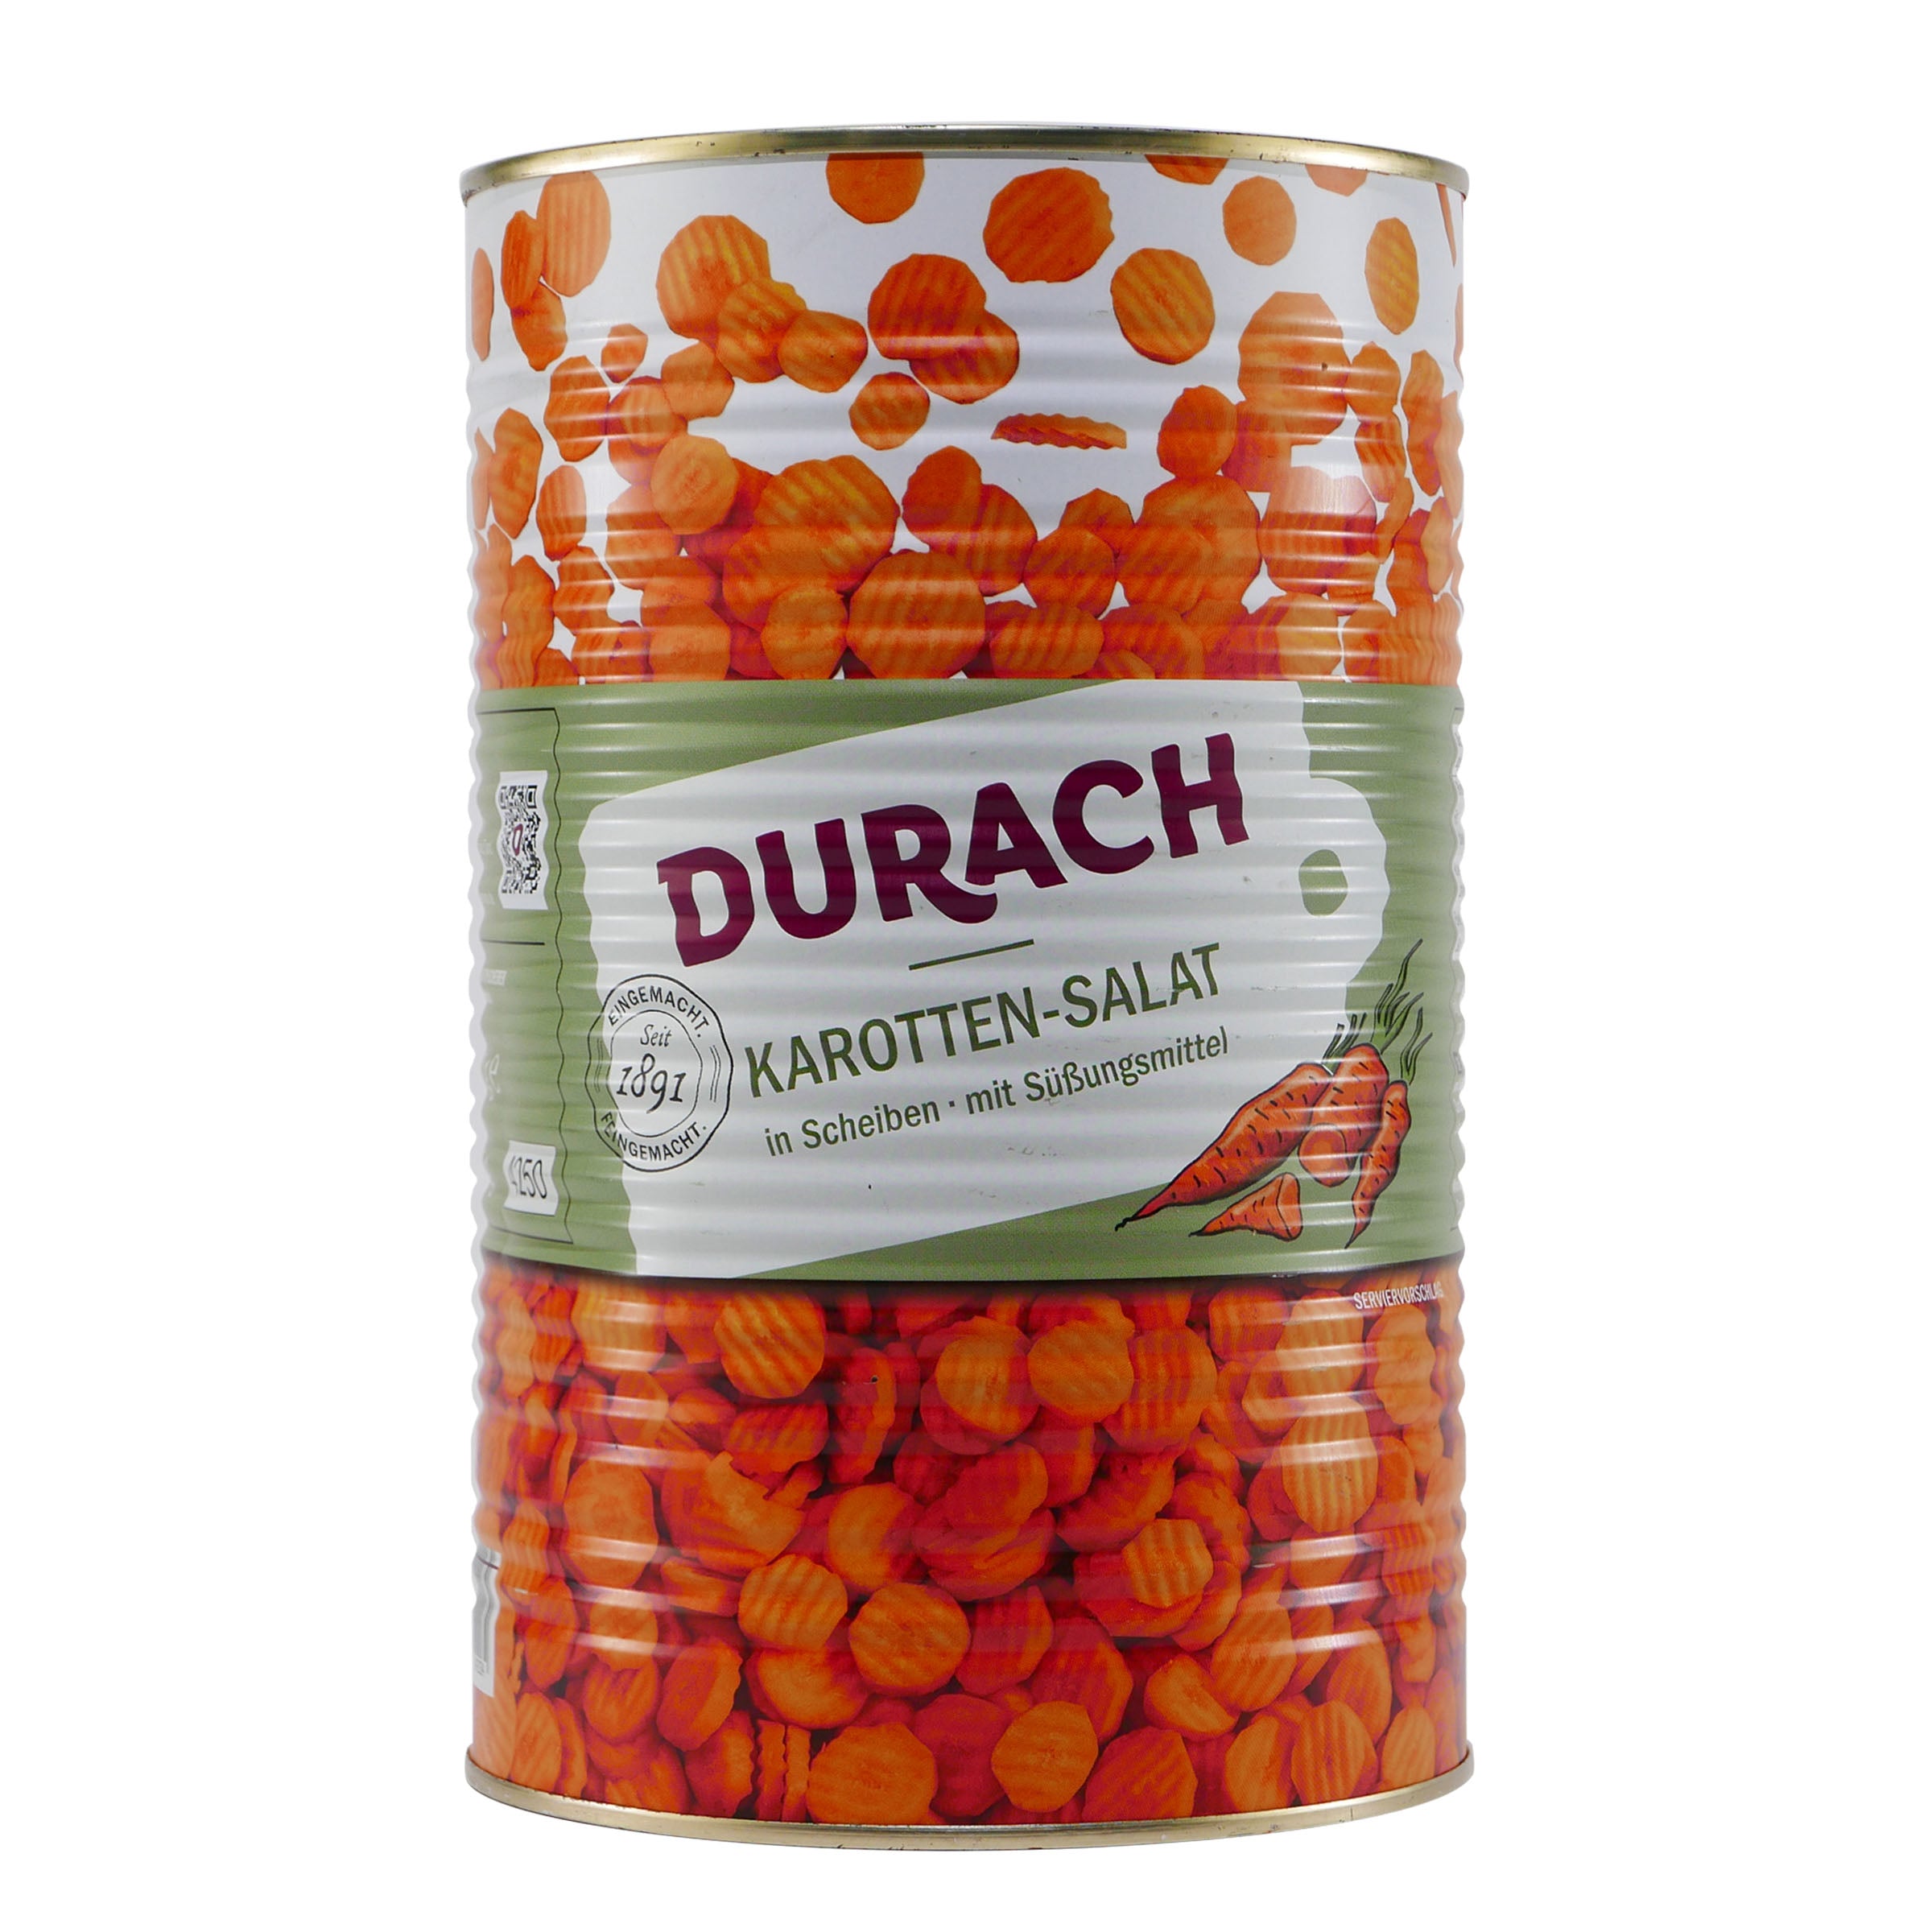 Durach Karotten-Salat in Scheiben 4,0KG